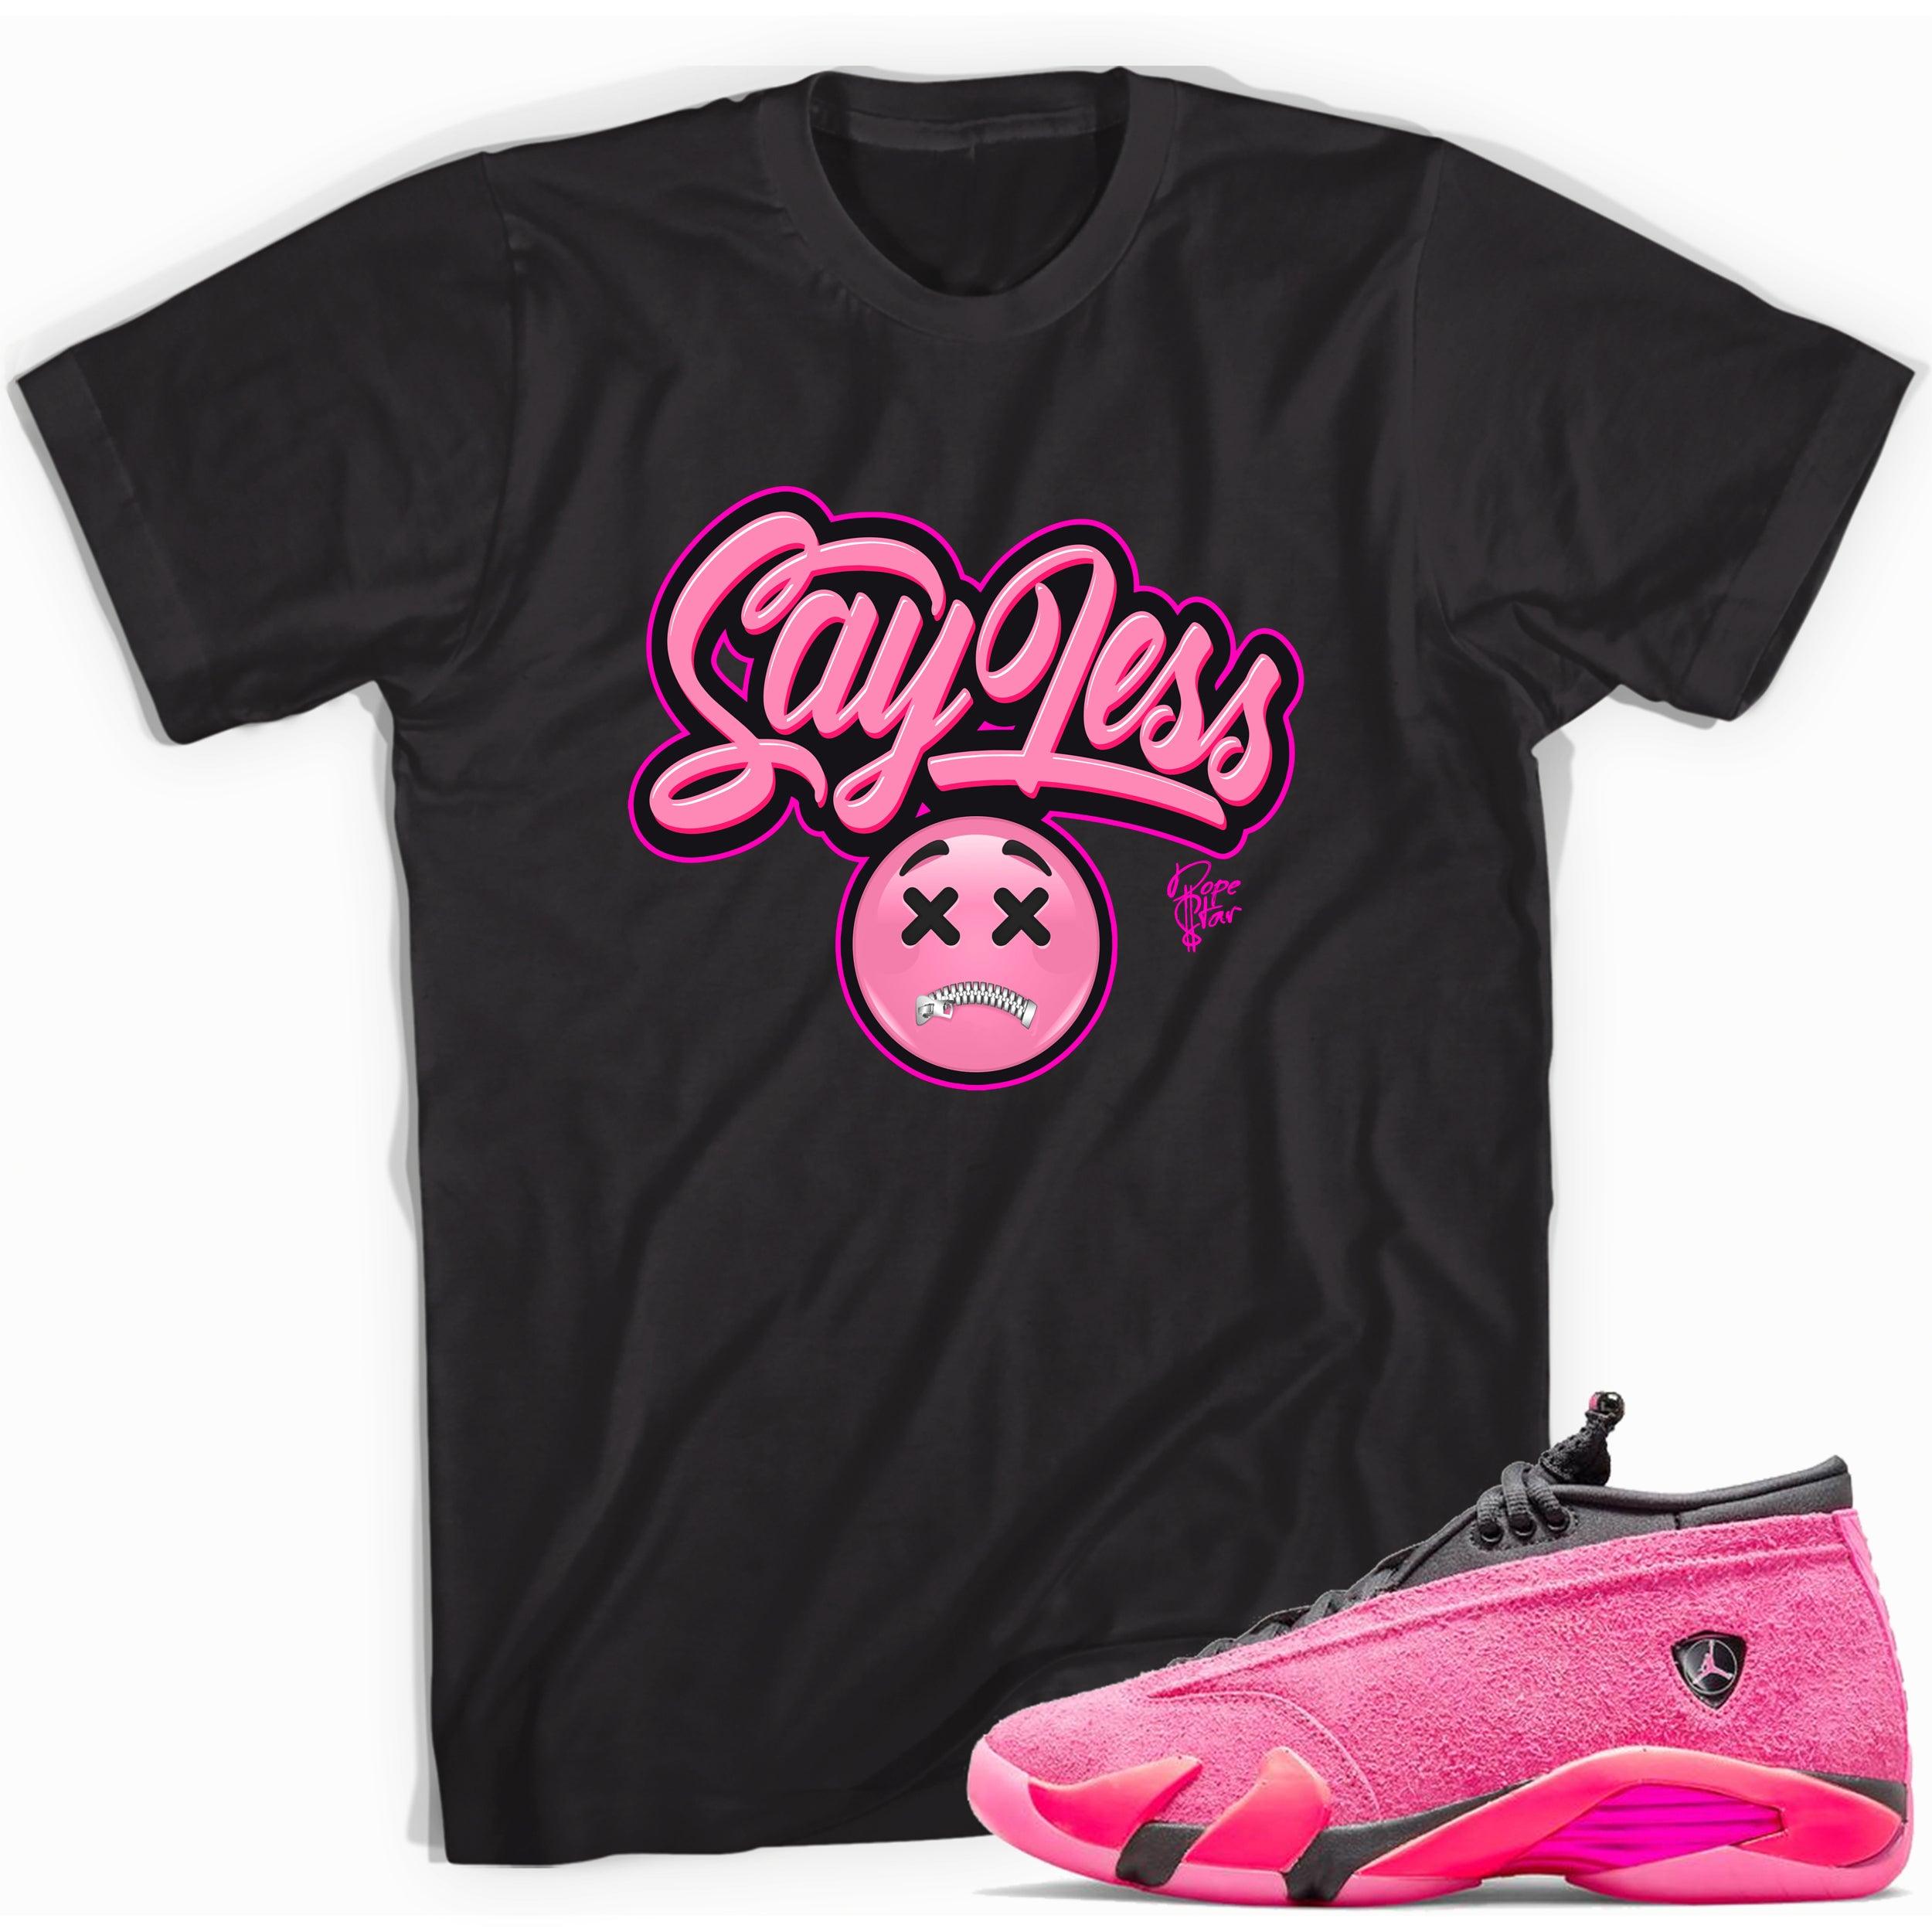 Black Say Less Shirt Jordan 14 Shocking Pink photo